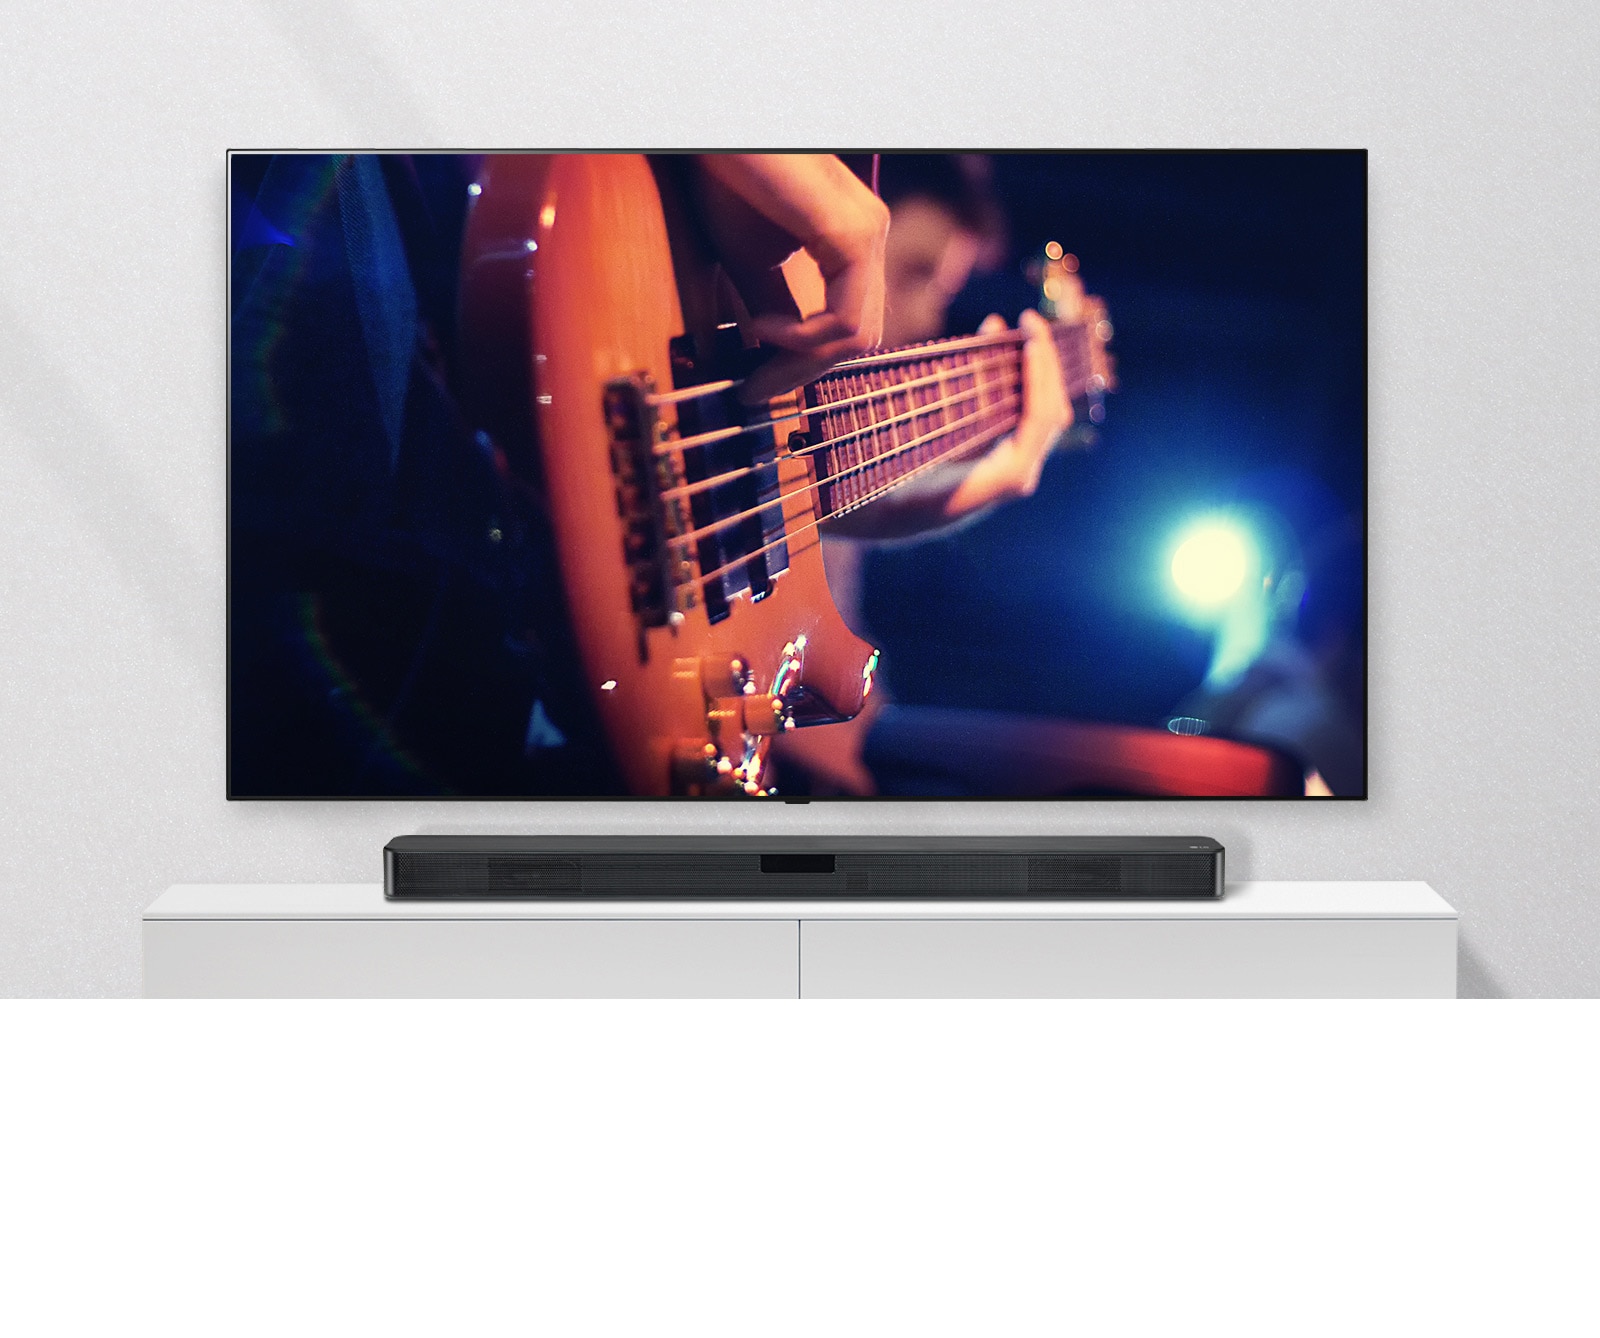 Μια τηλεόραση στον τοίχο με το Sound Bar σε ένα λευκό ράφι. Η τηλεόραση δείχνει έναν άνδρα να παίζει κιθάρα.